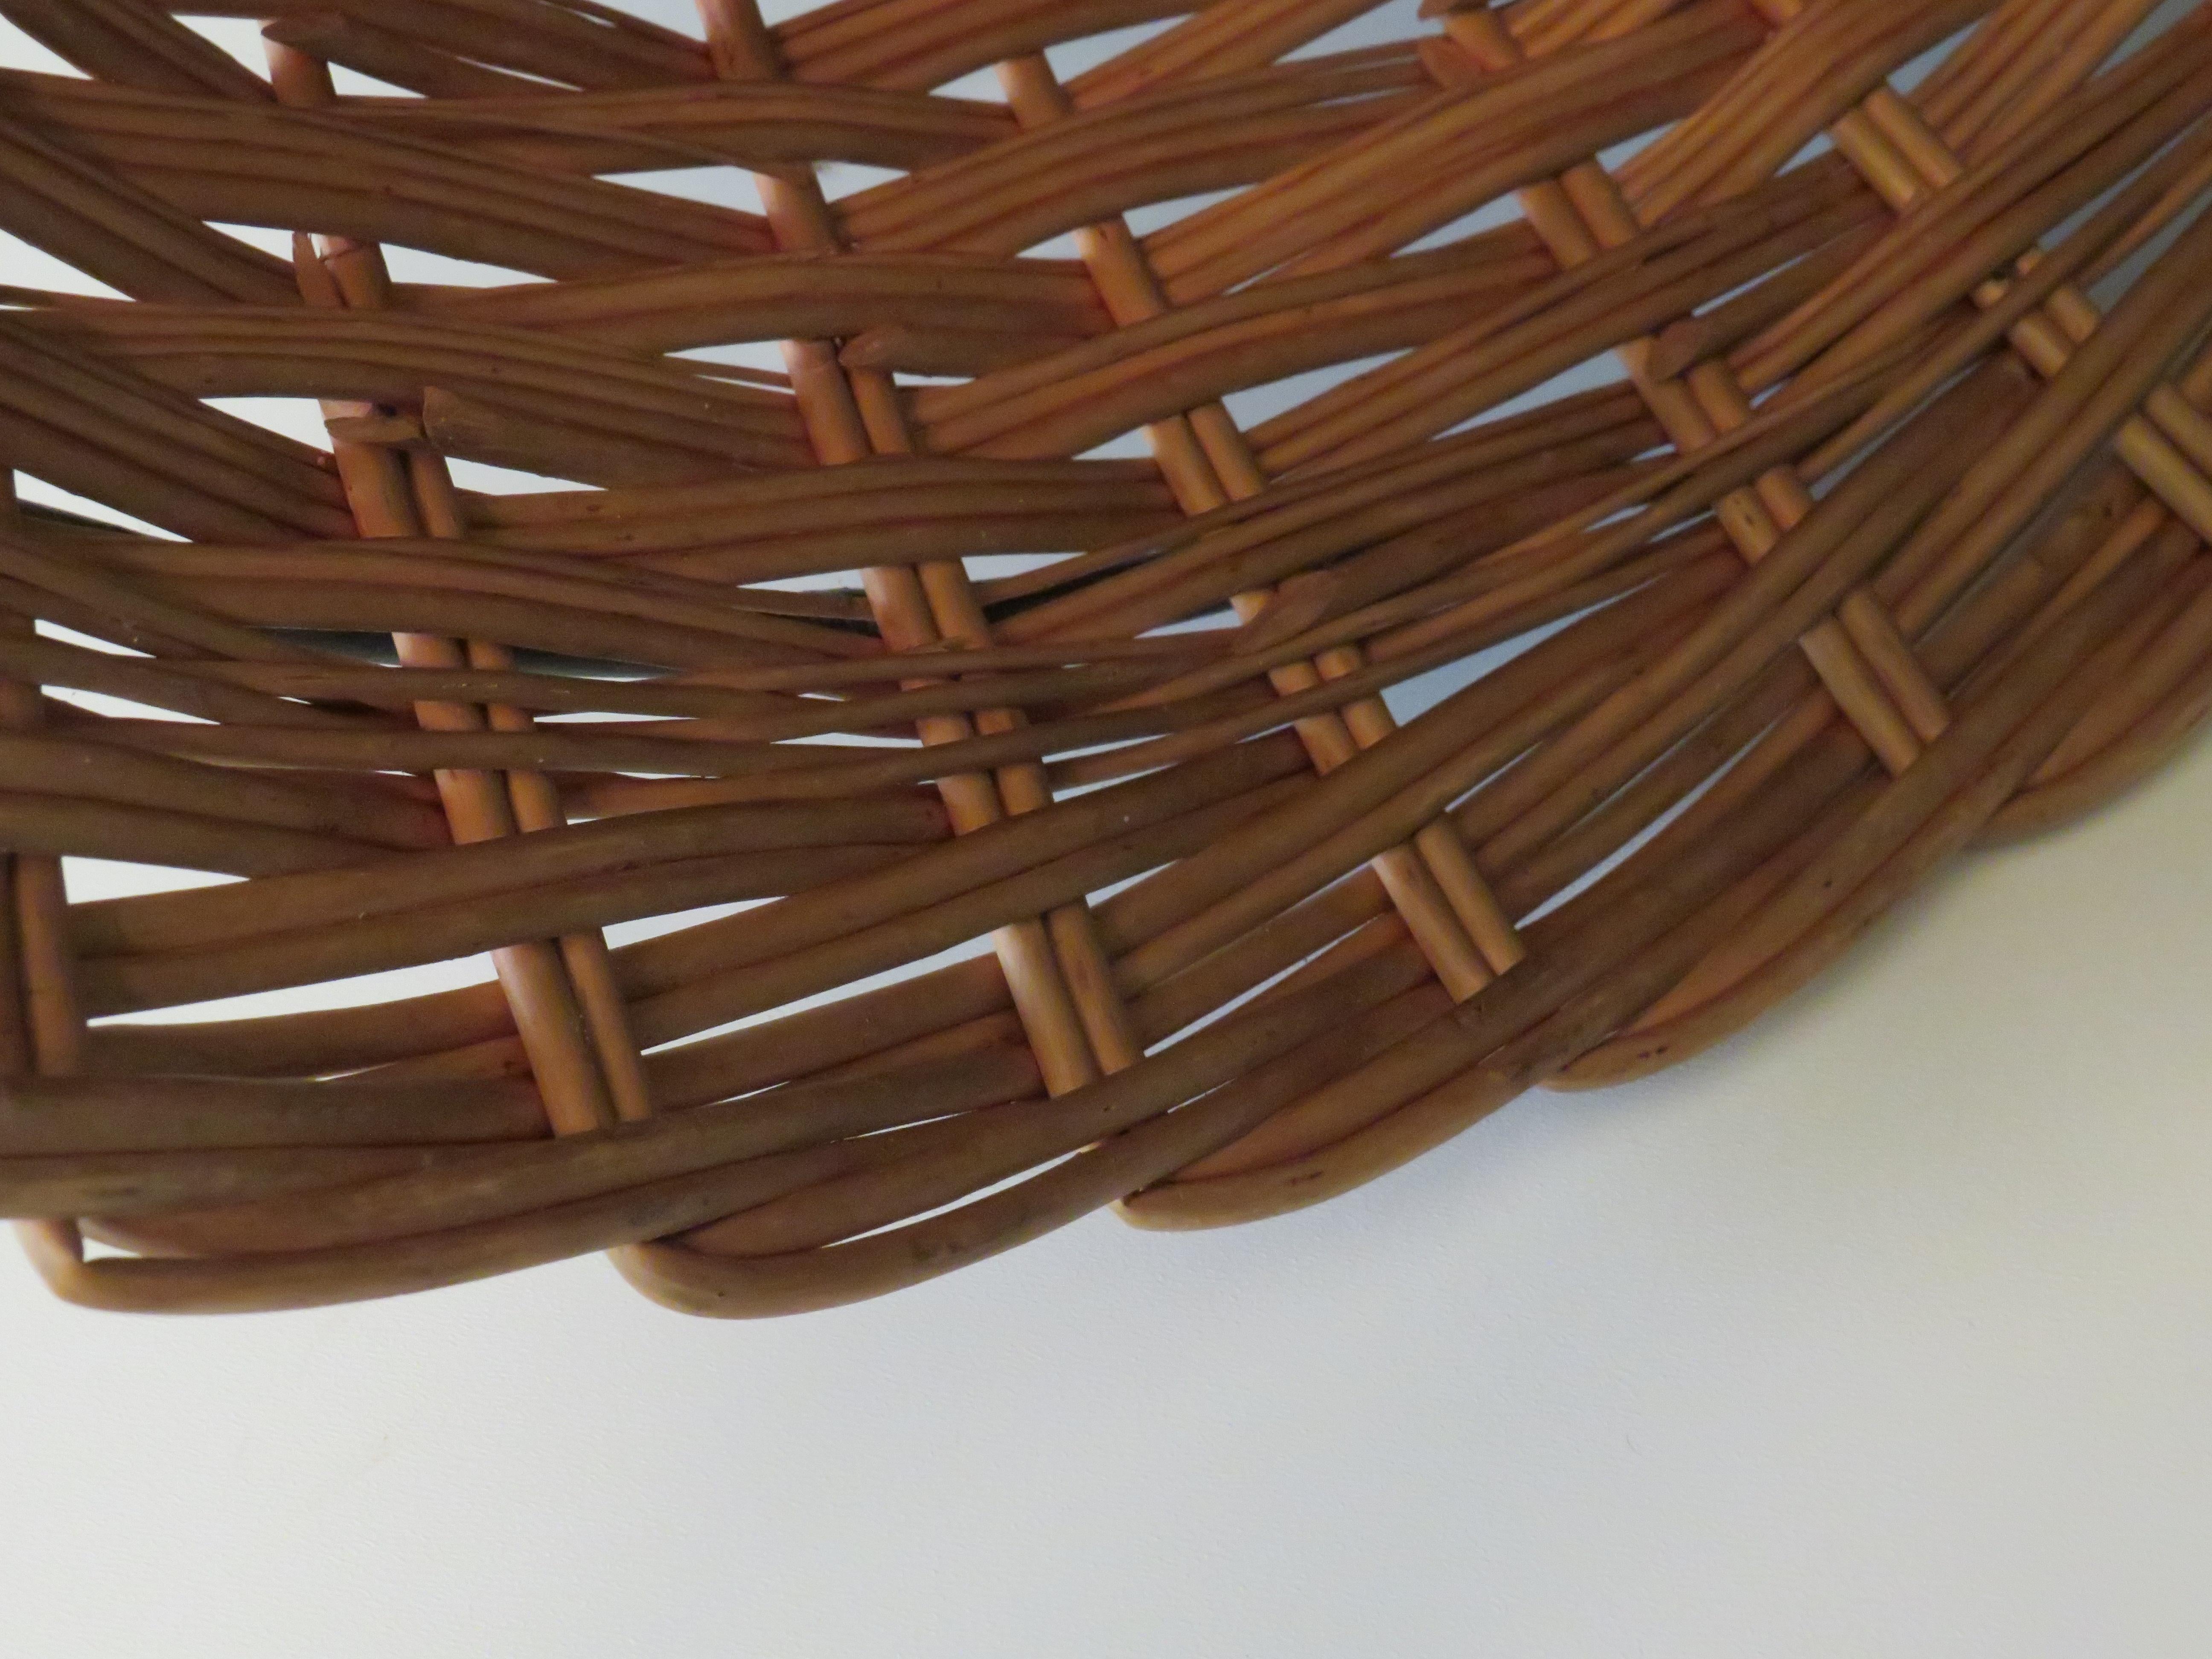 Metal Rohé & Noordwolde, set of 2 wicker display baskets in metal base.